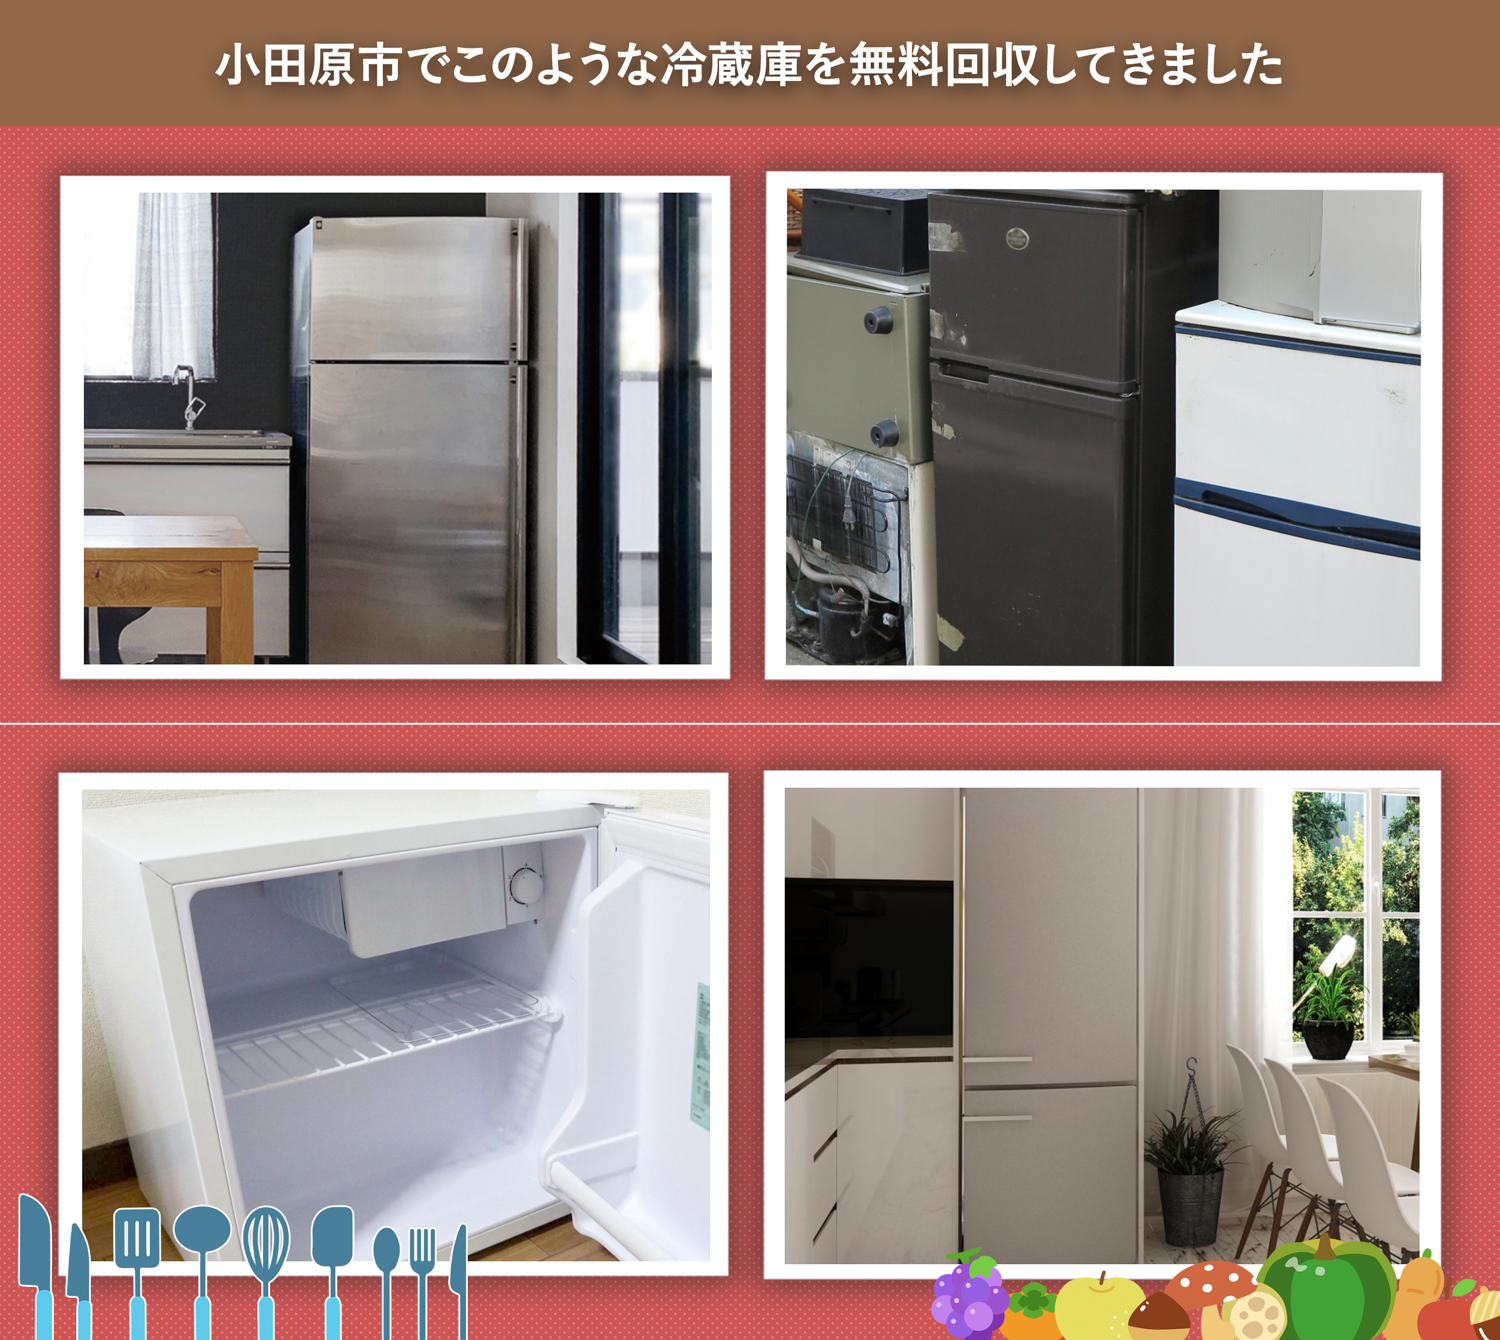 小田原市でこのような冷蔵庫を無料回収してきました。